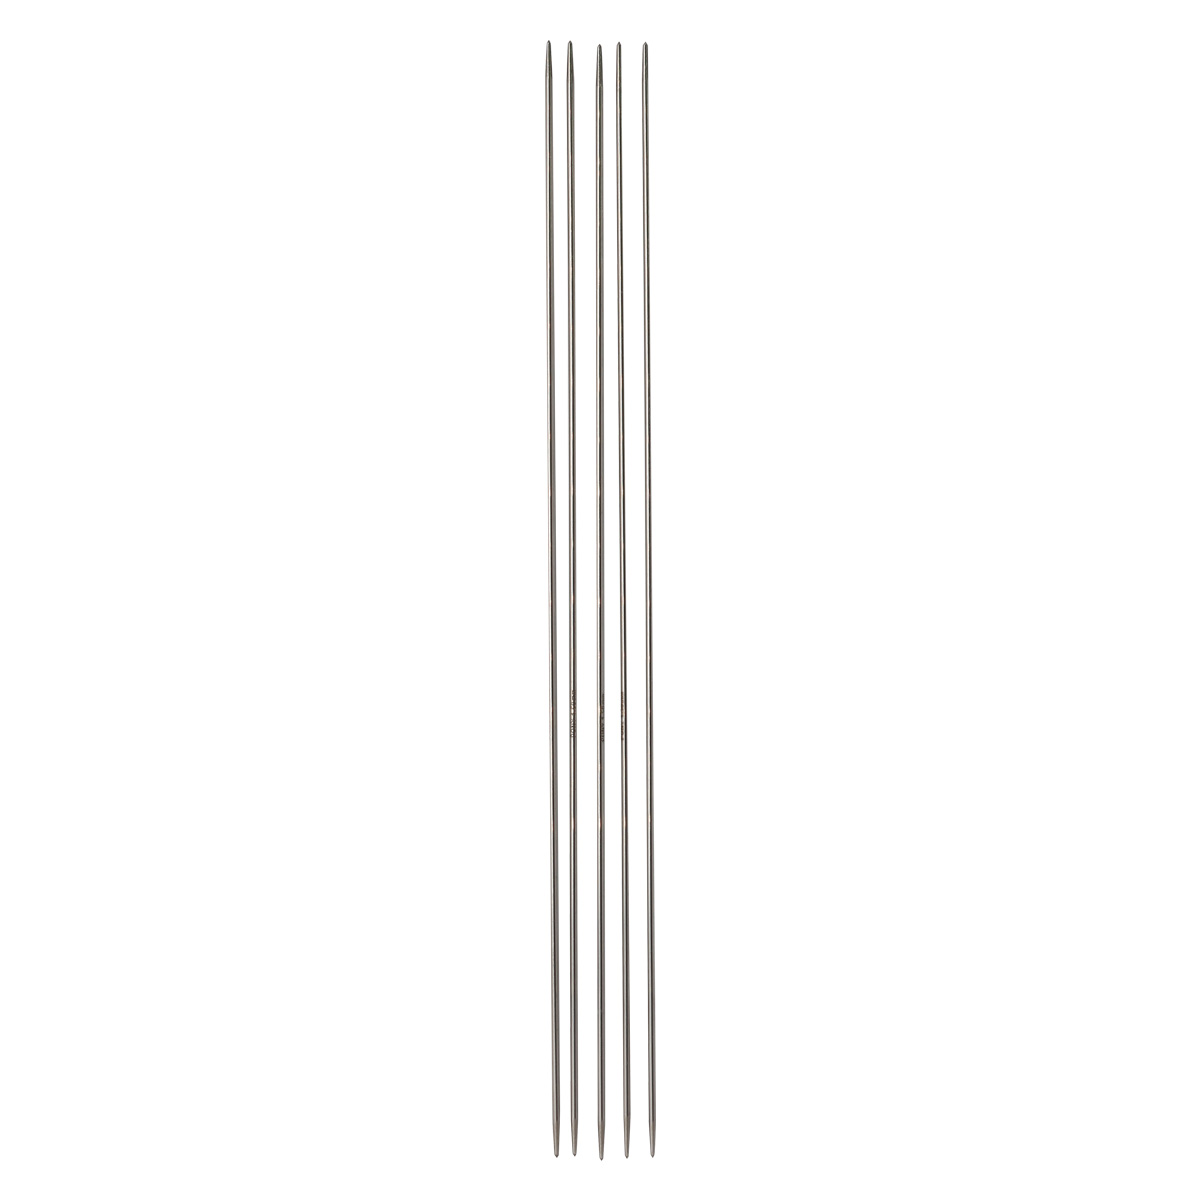 Спицы Pony легкие алюминиевые для вязания чулок носков горловин 1.5 мм 20 см 39402 - фото 2